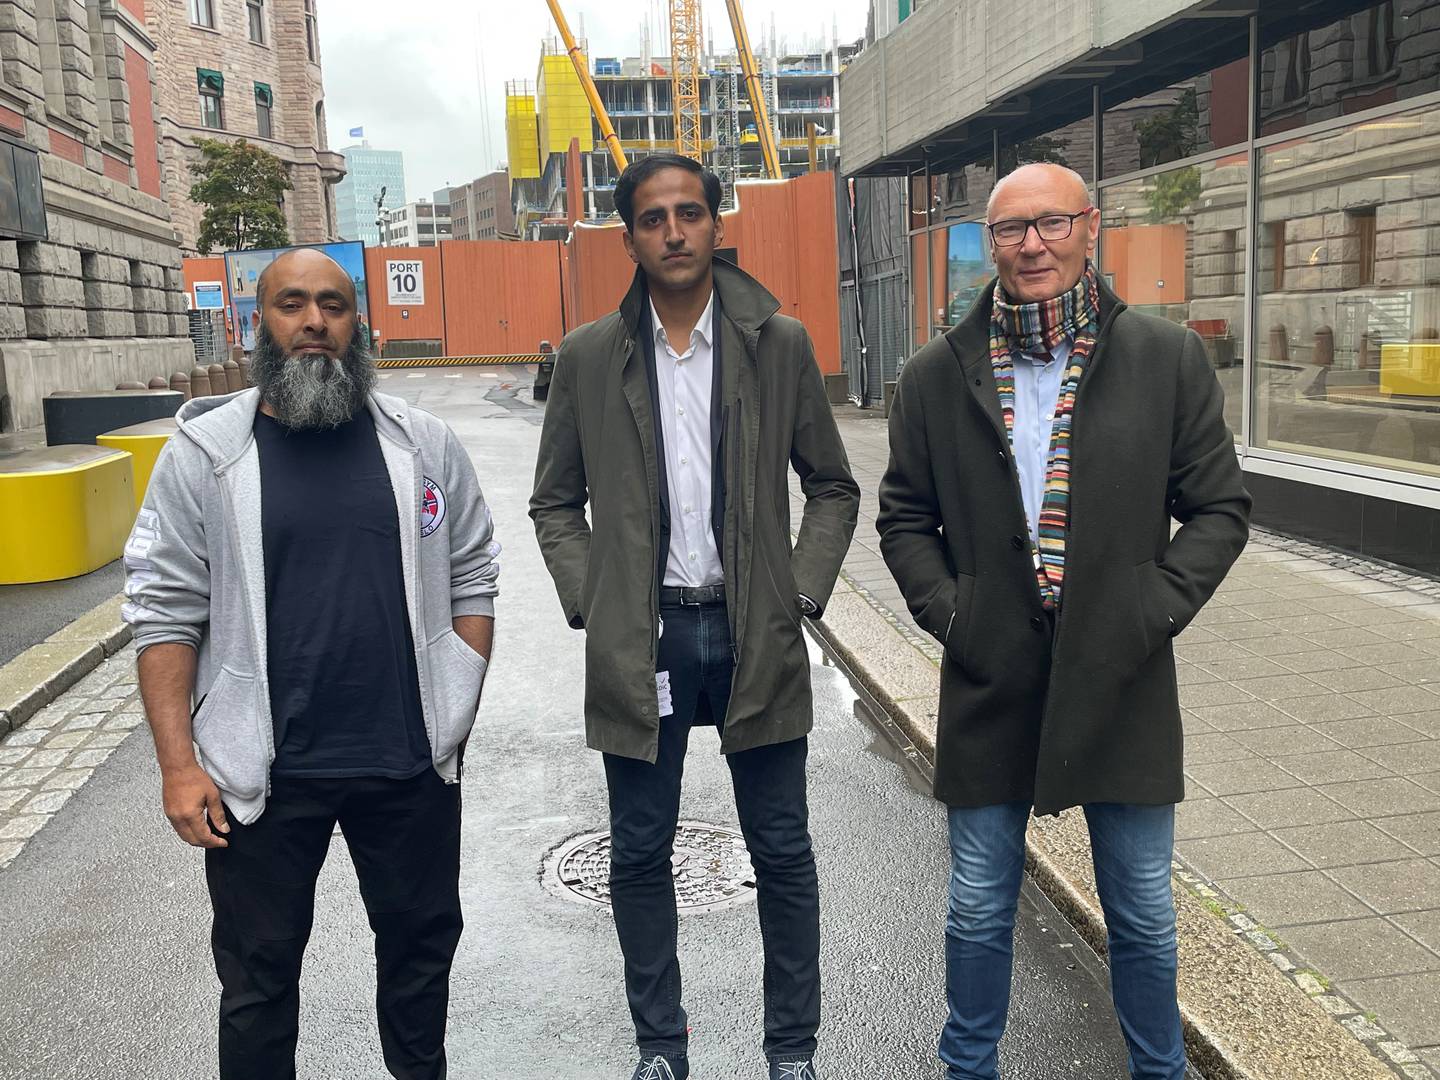 Erfaringskonsulent Shahid Rasool, (fra venstre), Høyrepolitiker Hassan Nawaz og leder av asjonalt avhoppervirksomhet og kriminalitetsforebygging Norge, Lasse Richardt.